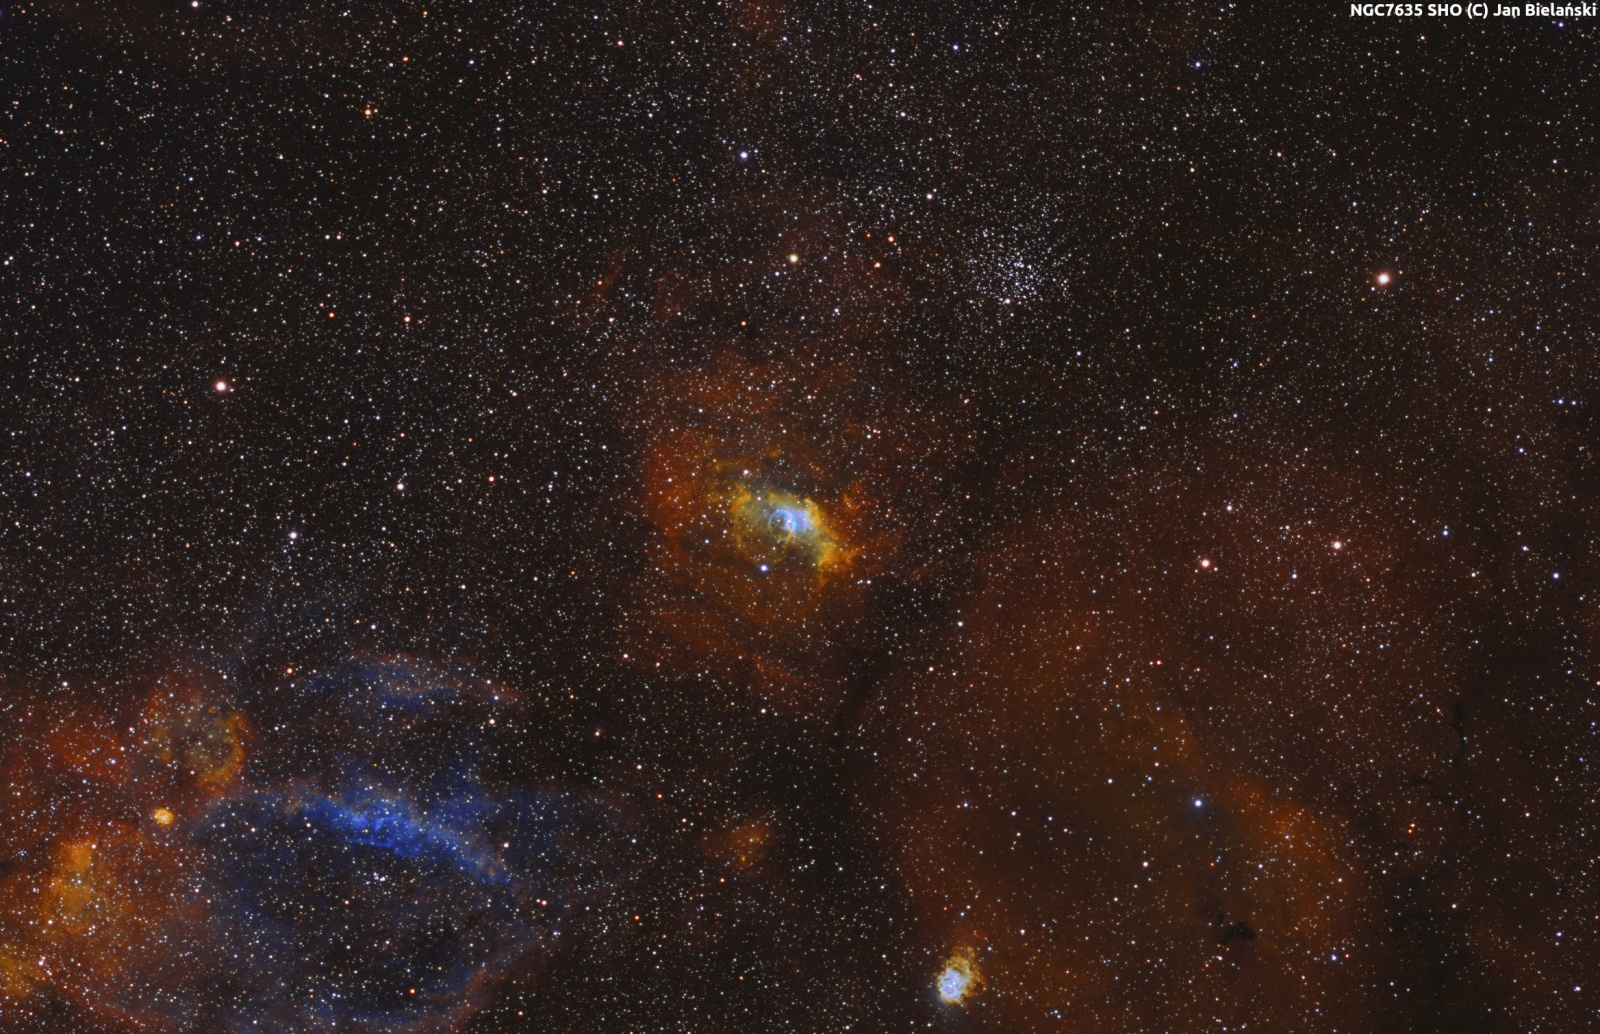 NGC7635_SHO_Ha_44_SII_41_OIII_42x600s_Skala-1-4.thumb.jpg.a6350585c6e06172d5928349565e51a0.jpg